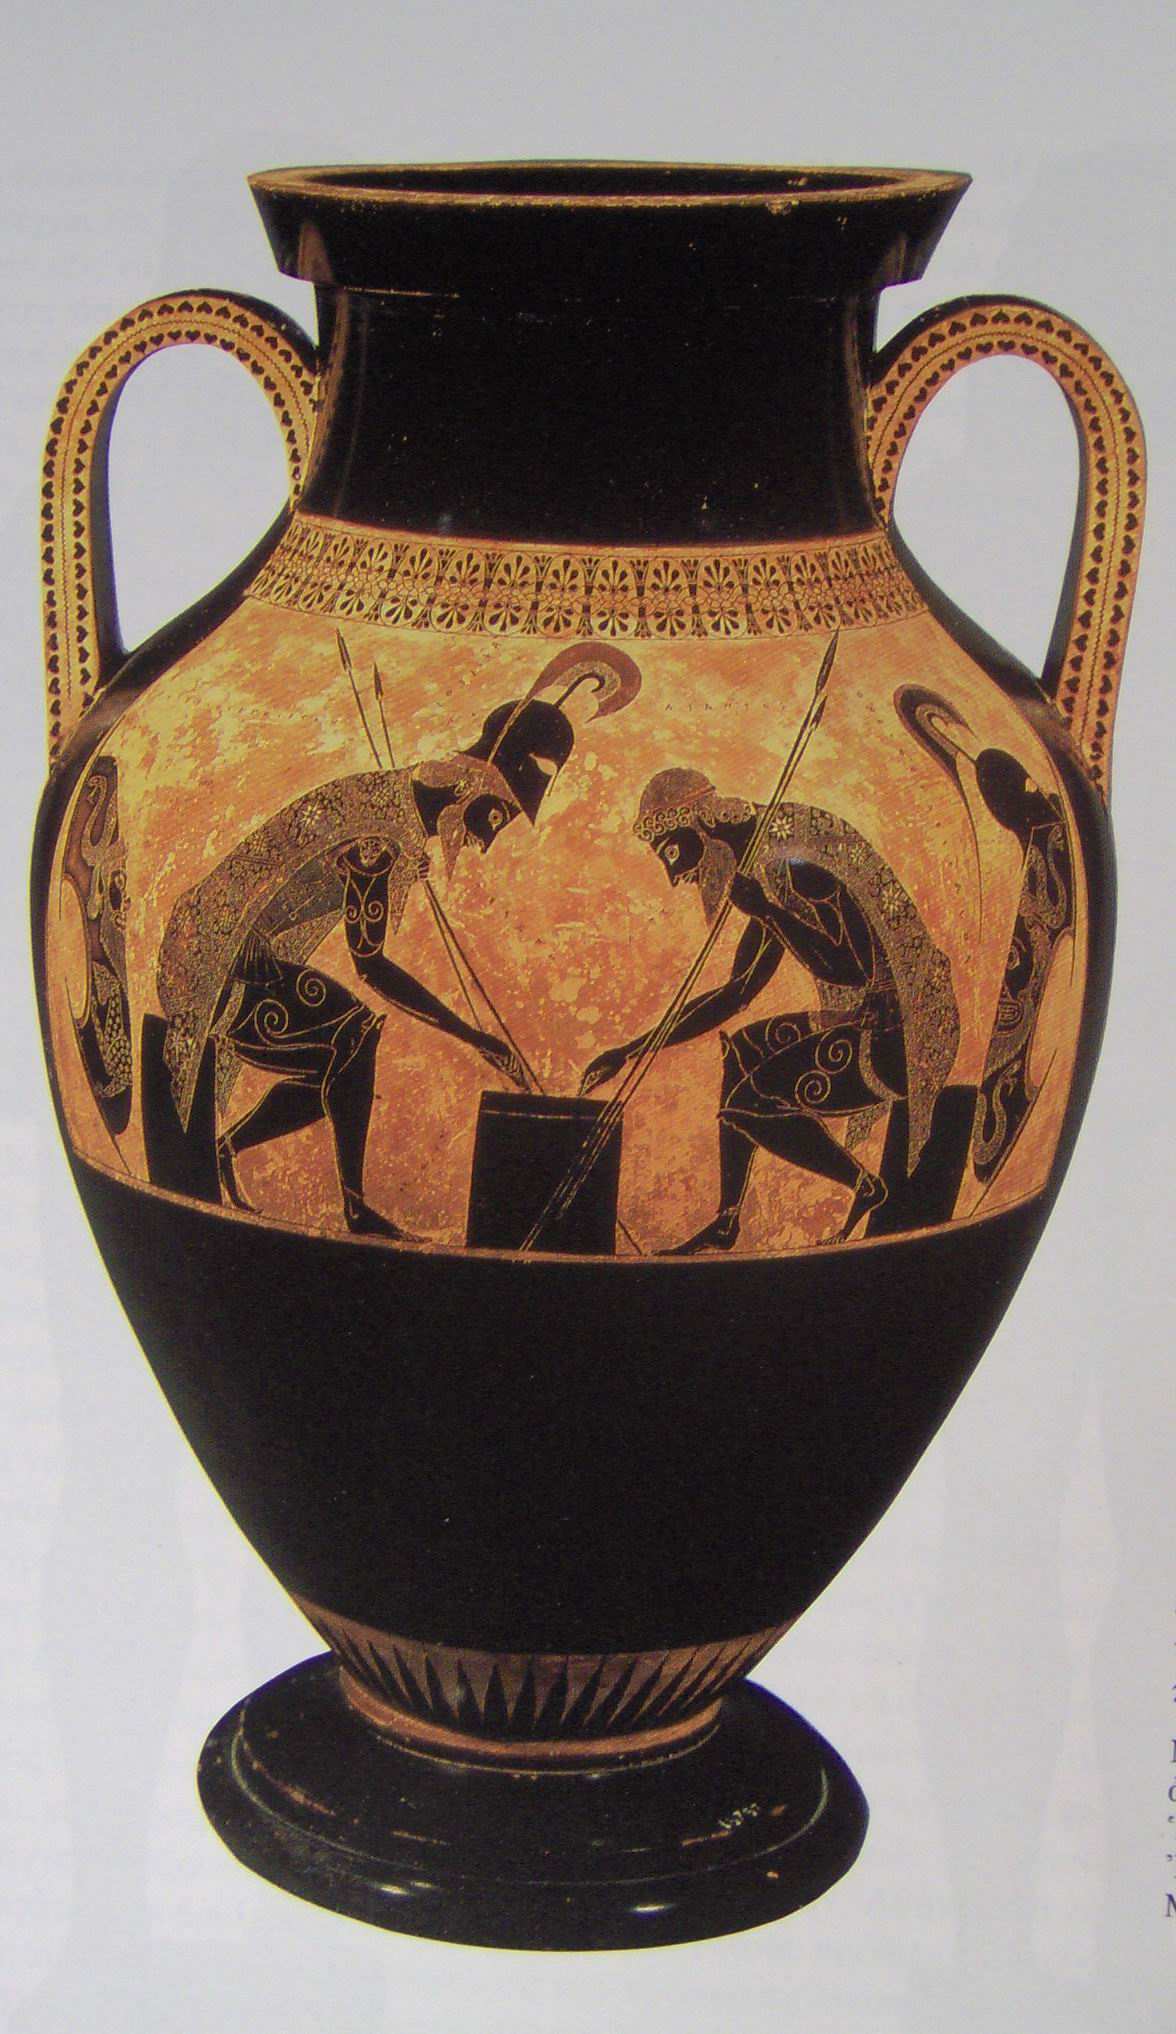 Τίτλος: Ο Αχιλλέας και ο Αίας παίζουν τους πεσσούς Χρονολογία: 540 π.χ. Υλικό: Πηλός Καλλιτέχνης: Εξηκίας Περιγραφή: Τα κεραµικά είναι σχεδόν η µοναδική µαρτυρία αρχαίας ελληνικής ζωγραφικής.